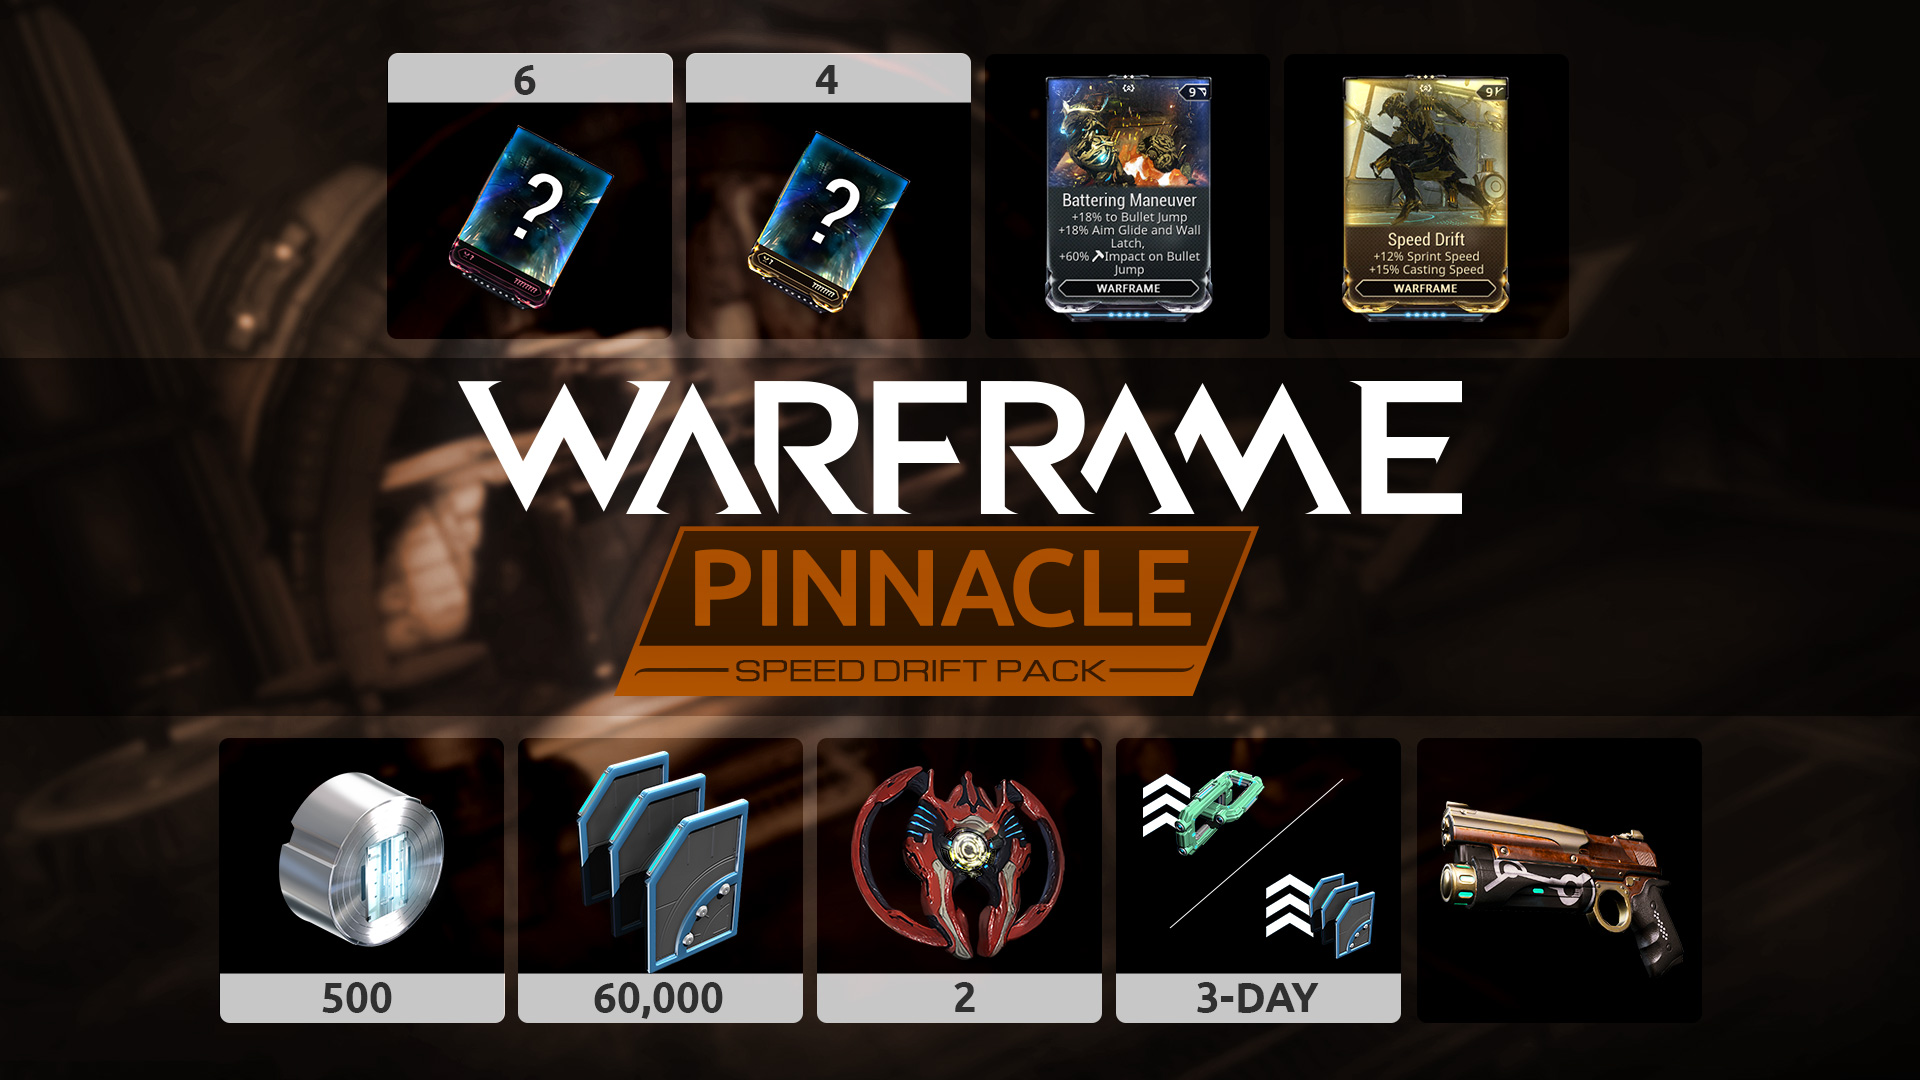 Warframe: Speed Drift Pinnacle Pack Featured Screenshot #1